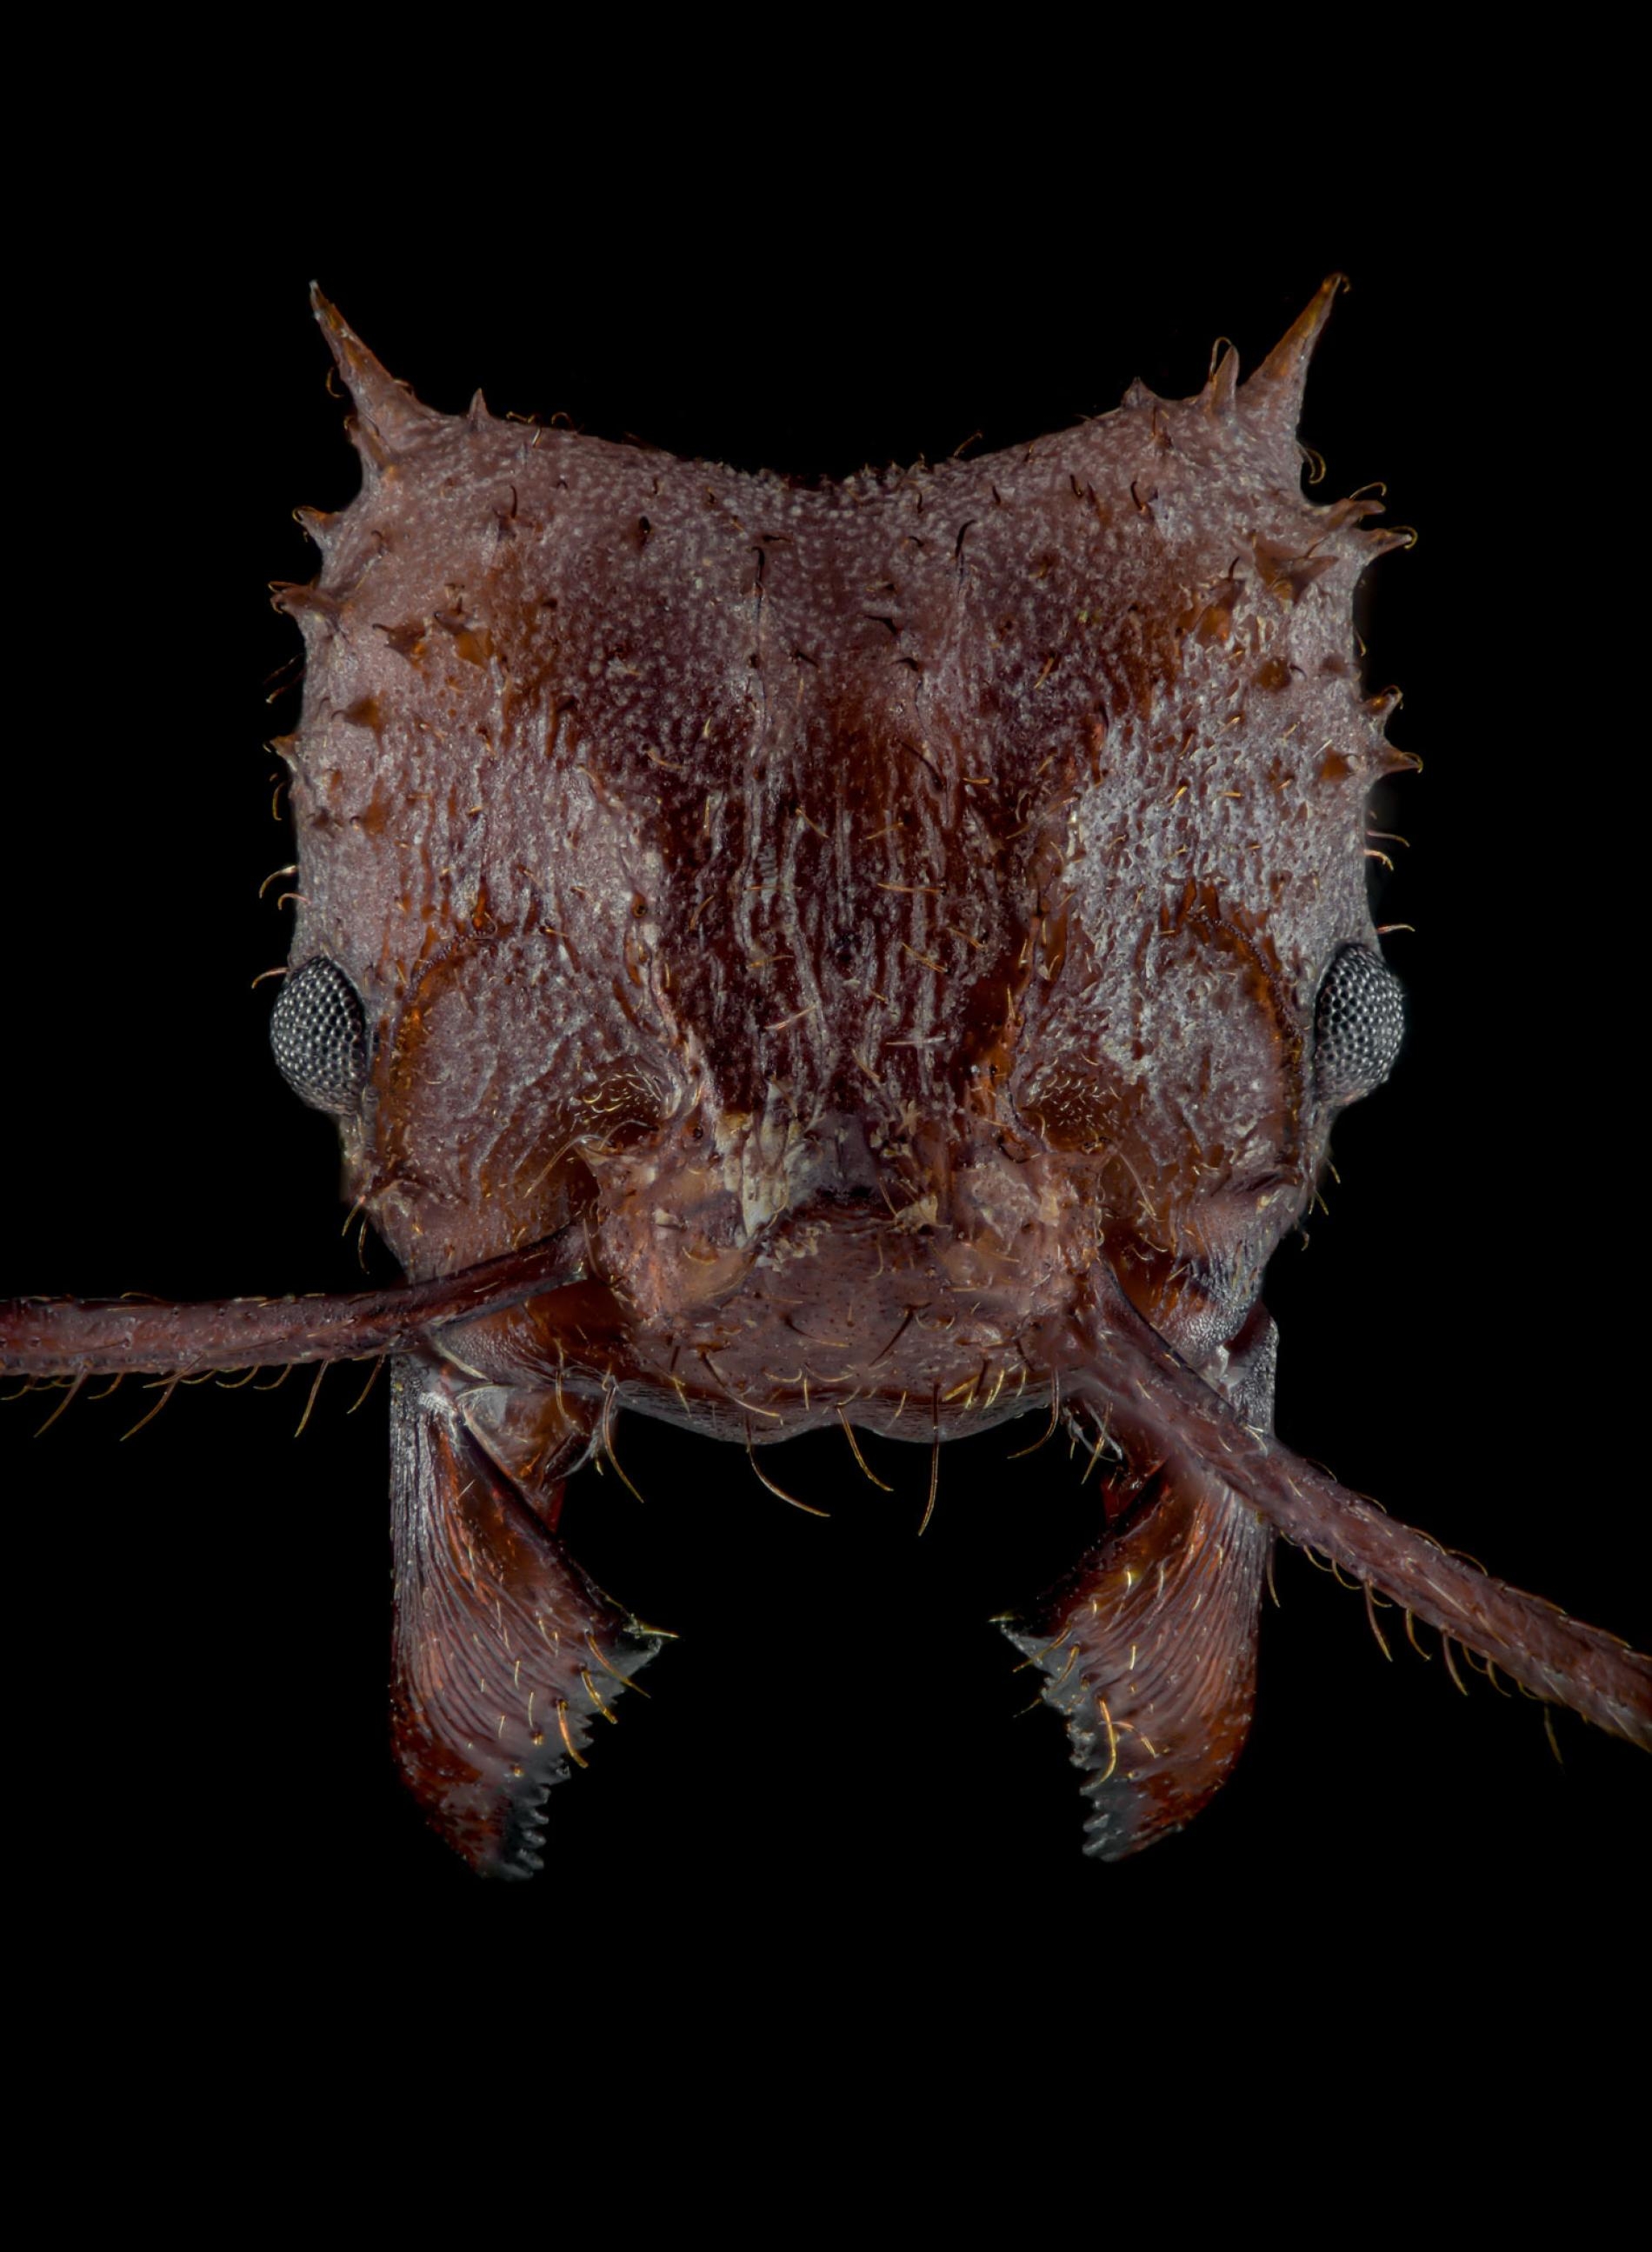 棘頂切葉蟻體表發現新型生物礦質盔甲 PHOTOGRAPH BY EDUARD FLORIN NIGA / EDDIMAGE PHOTOGRAPHY 【首頁影片】無 